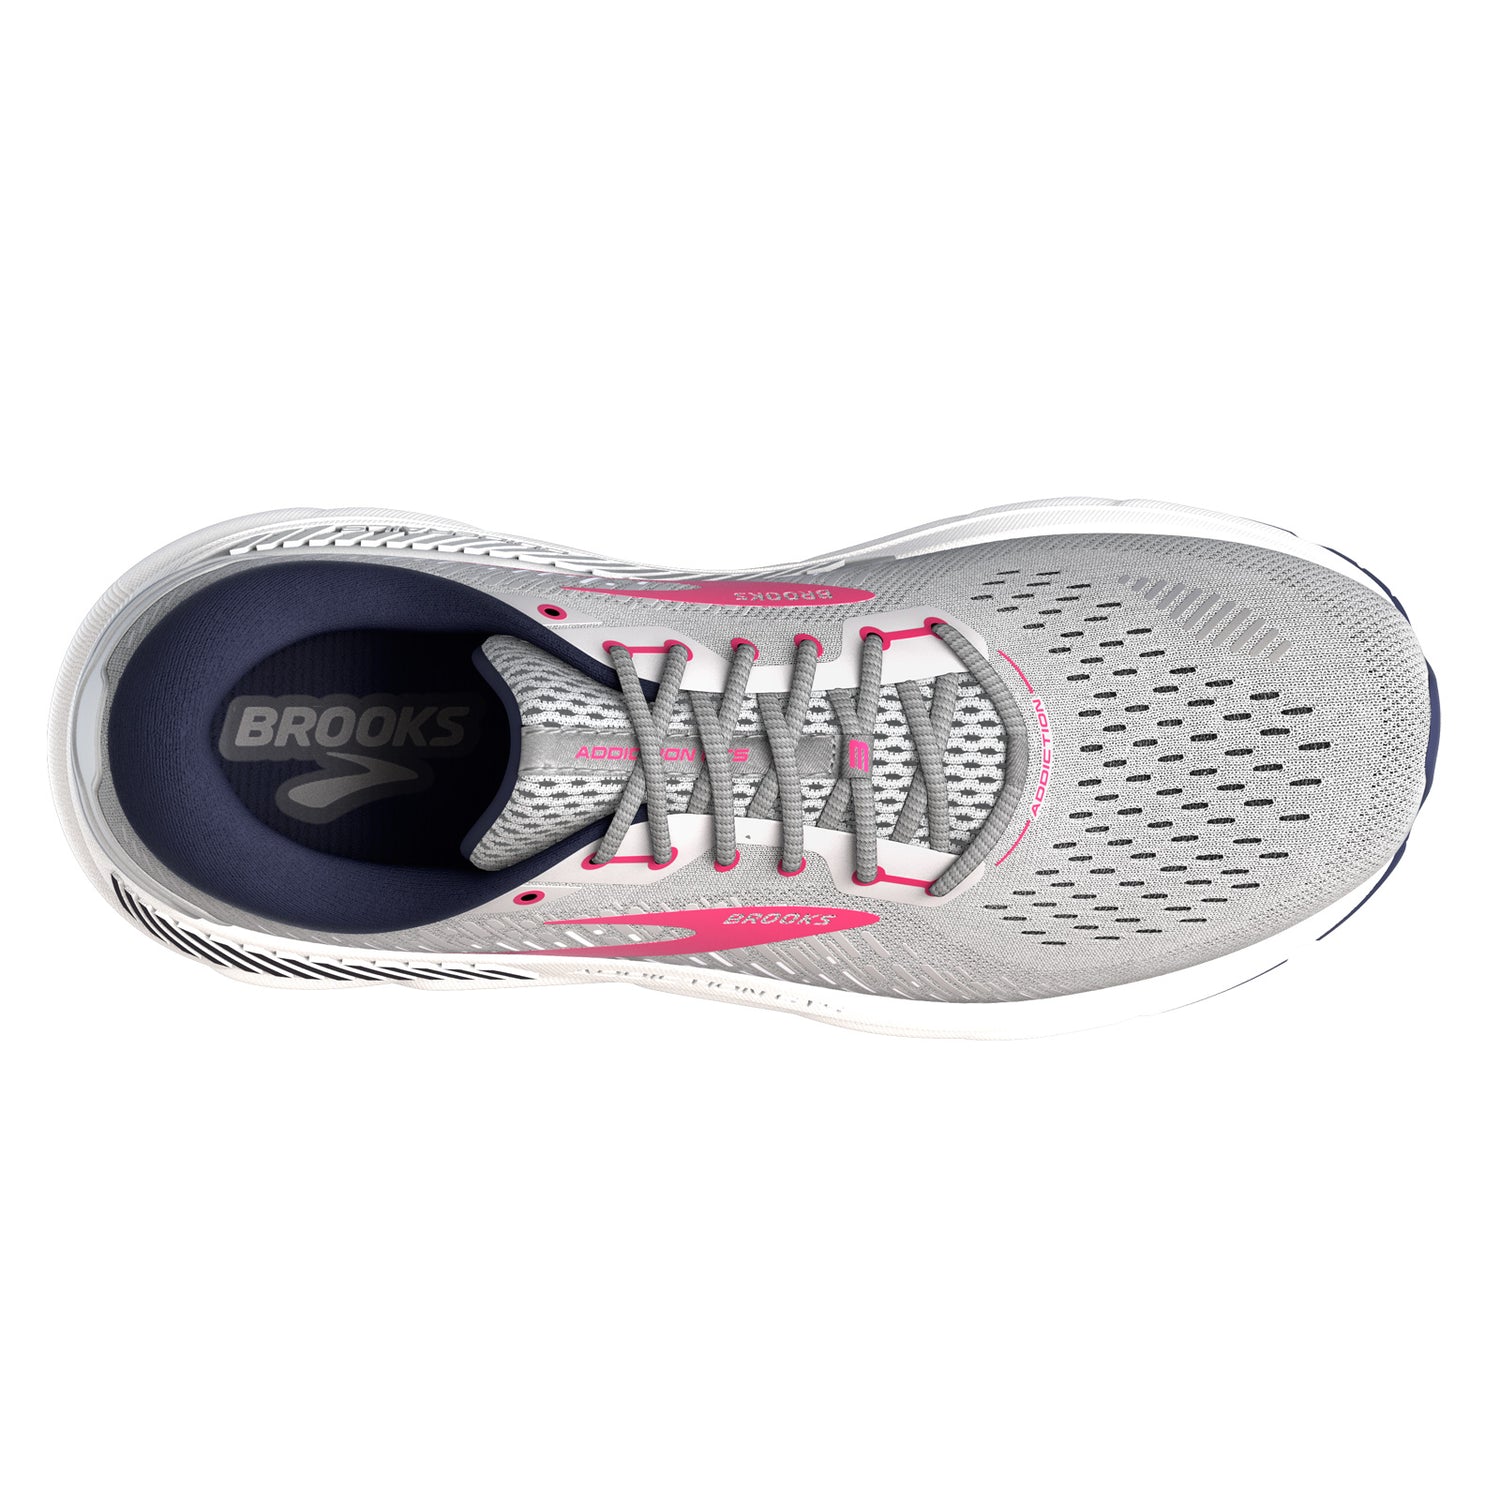 Peltz Shoes  Women's Brooks Addiction GTS 15 Running Shoe Oyster/Rose 120352 1B 054